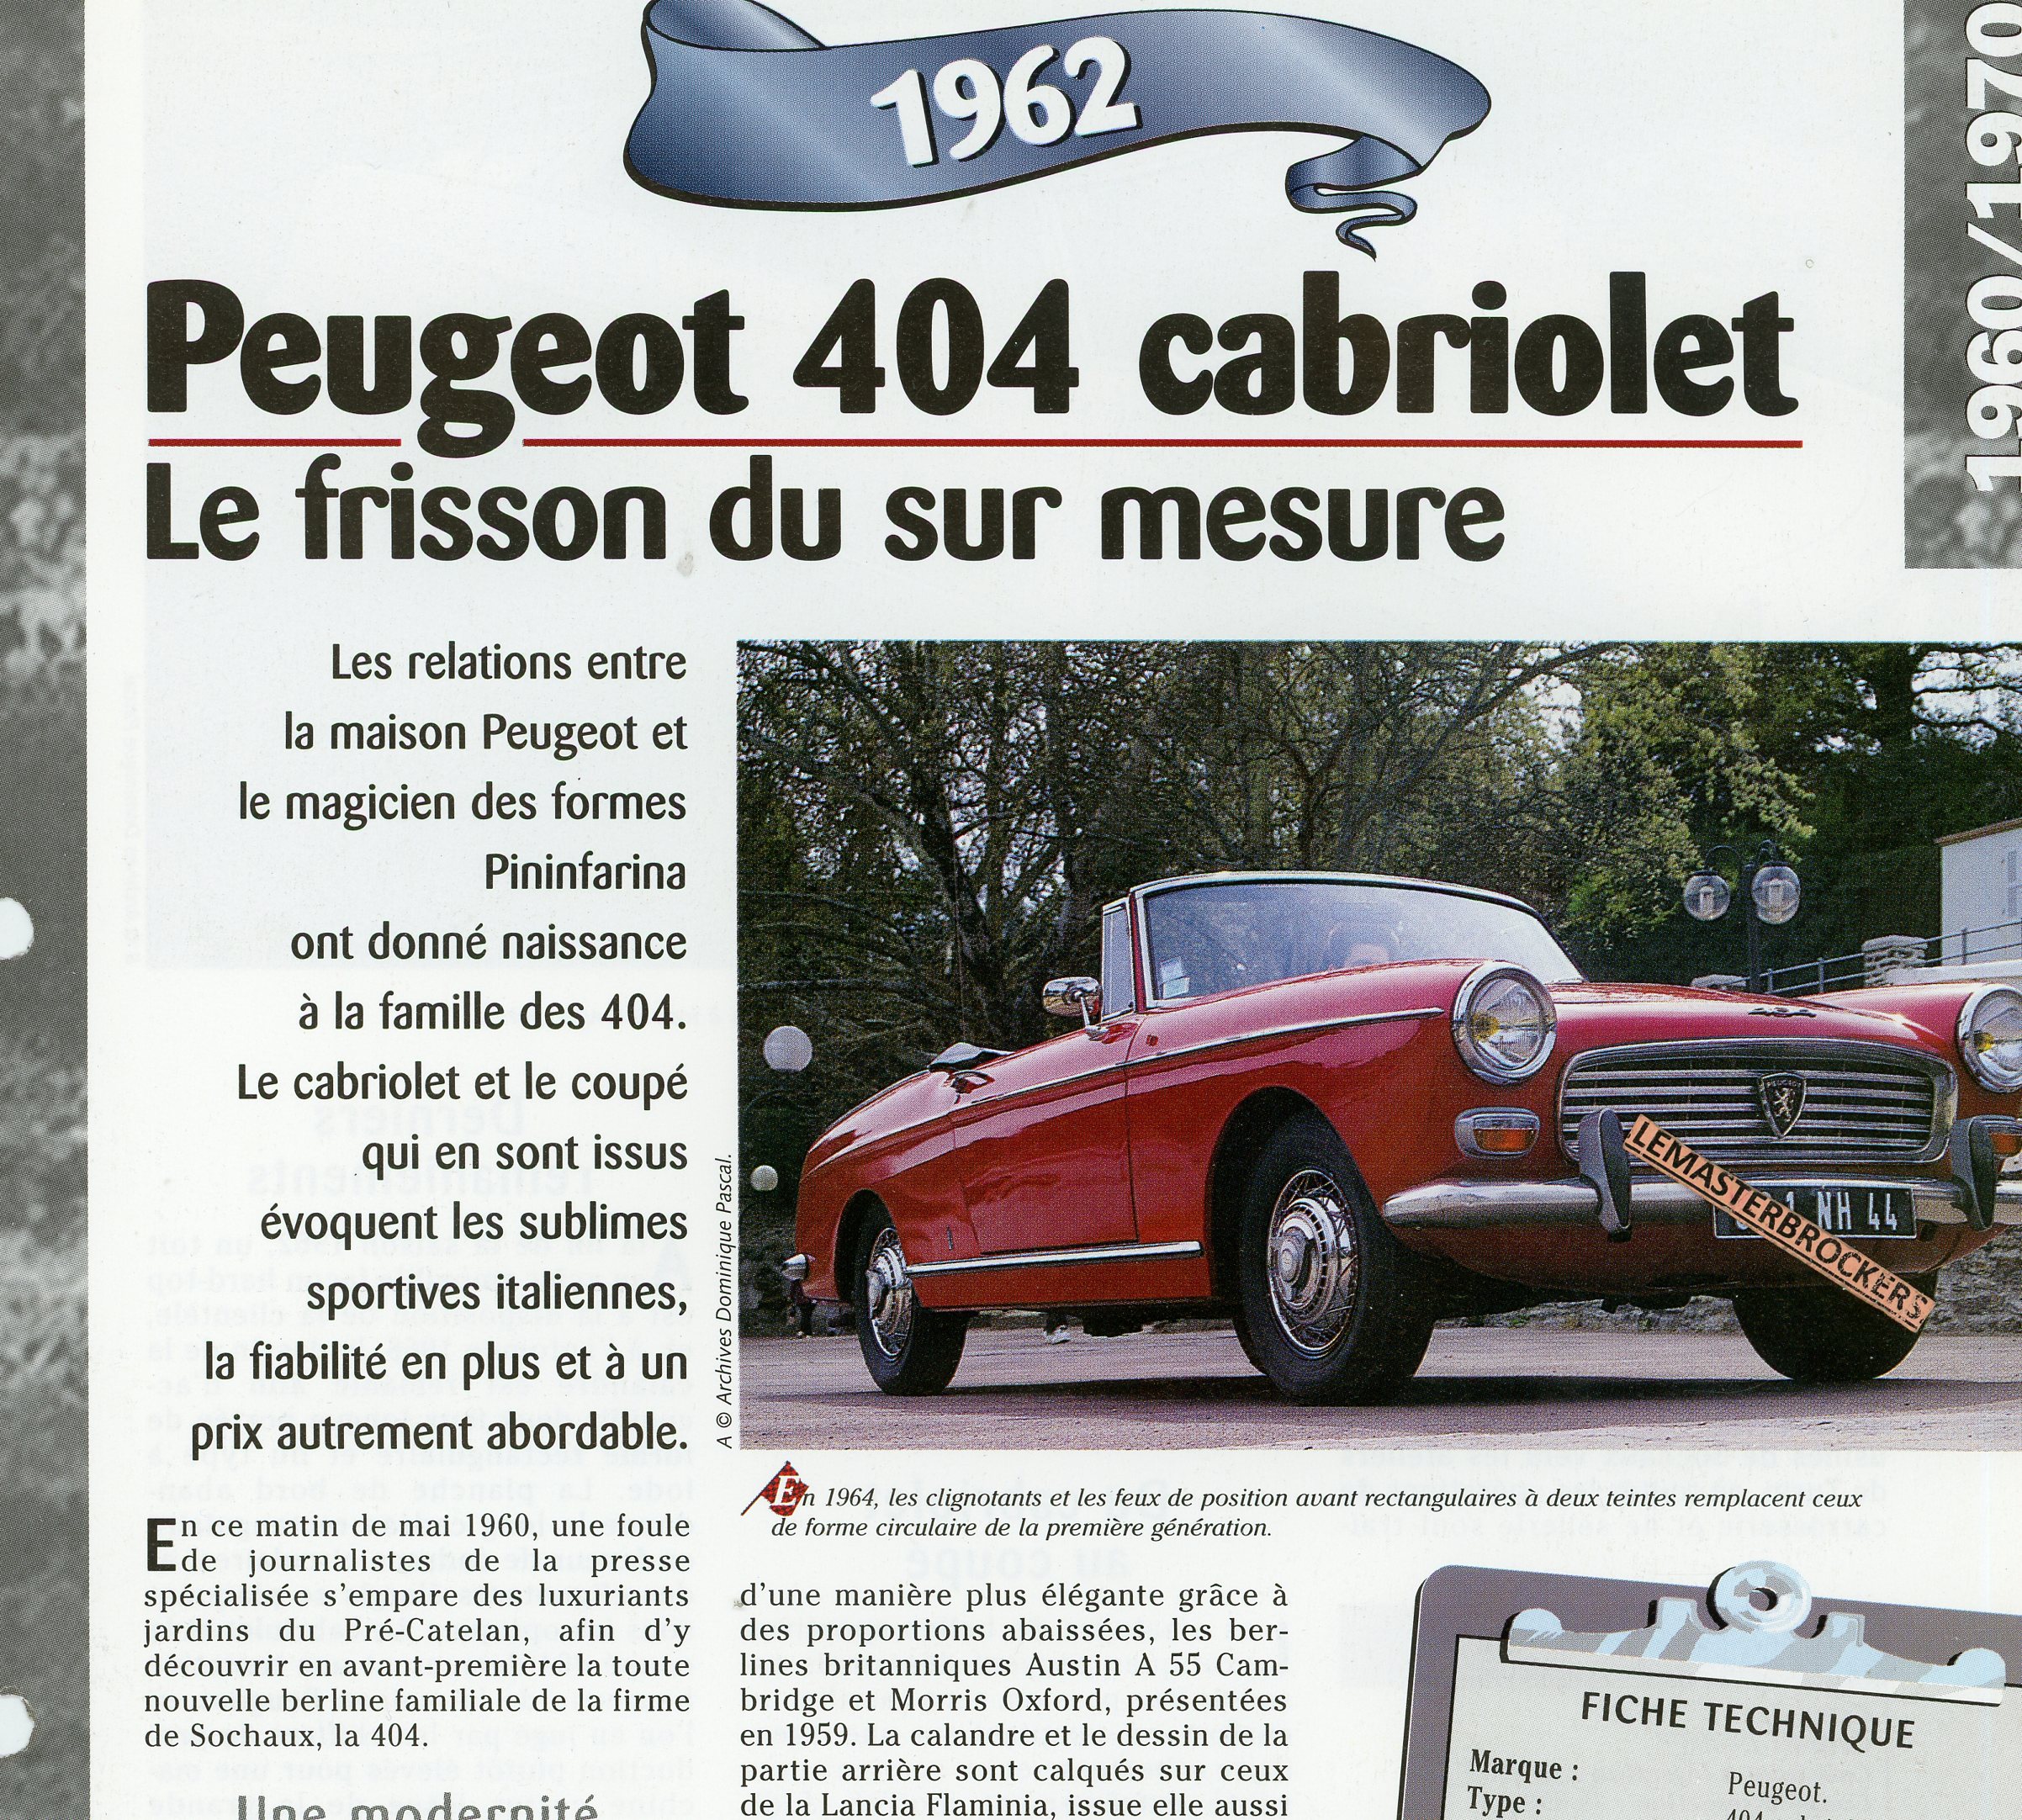 PEUGEOT-404-CABRIOLET-1962-FICHE-TECHNIQUE-VOITURE-LEMASTERBROCKERS